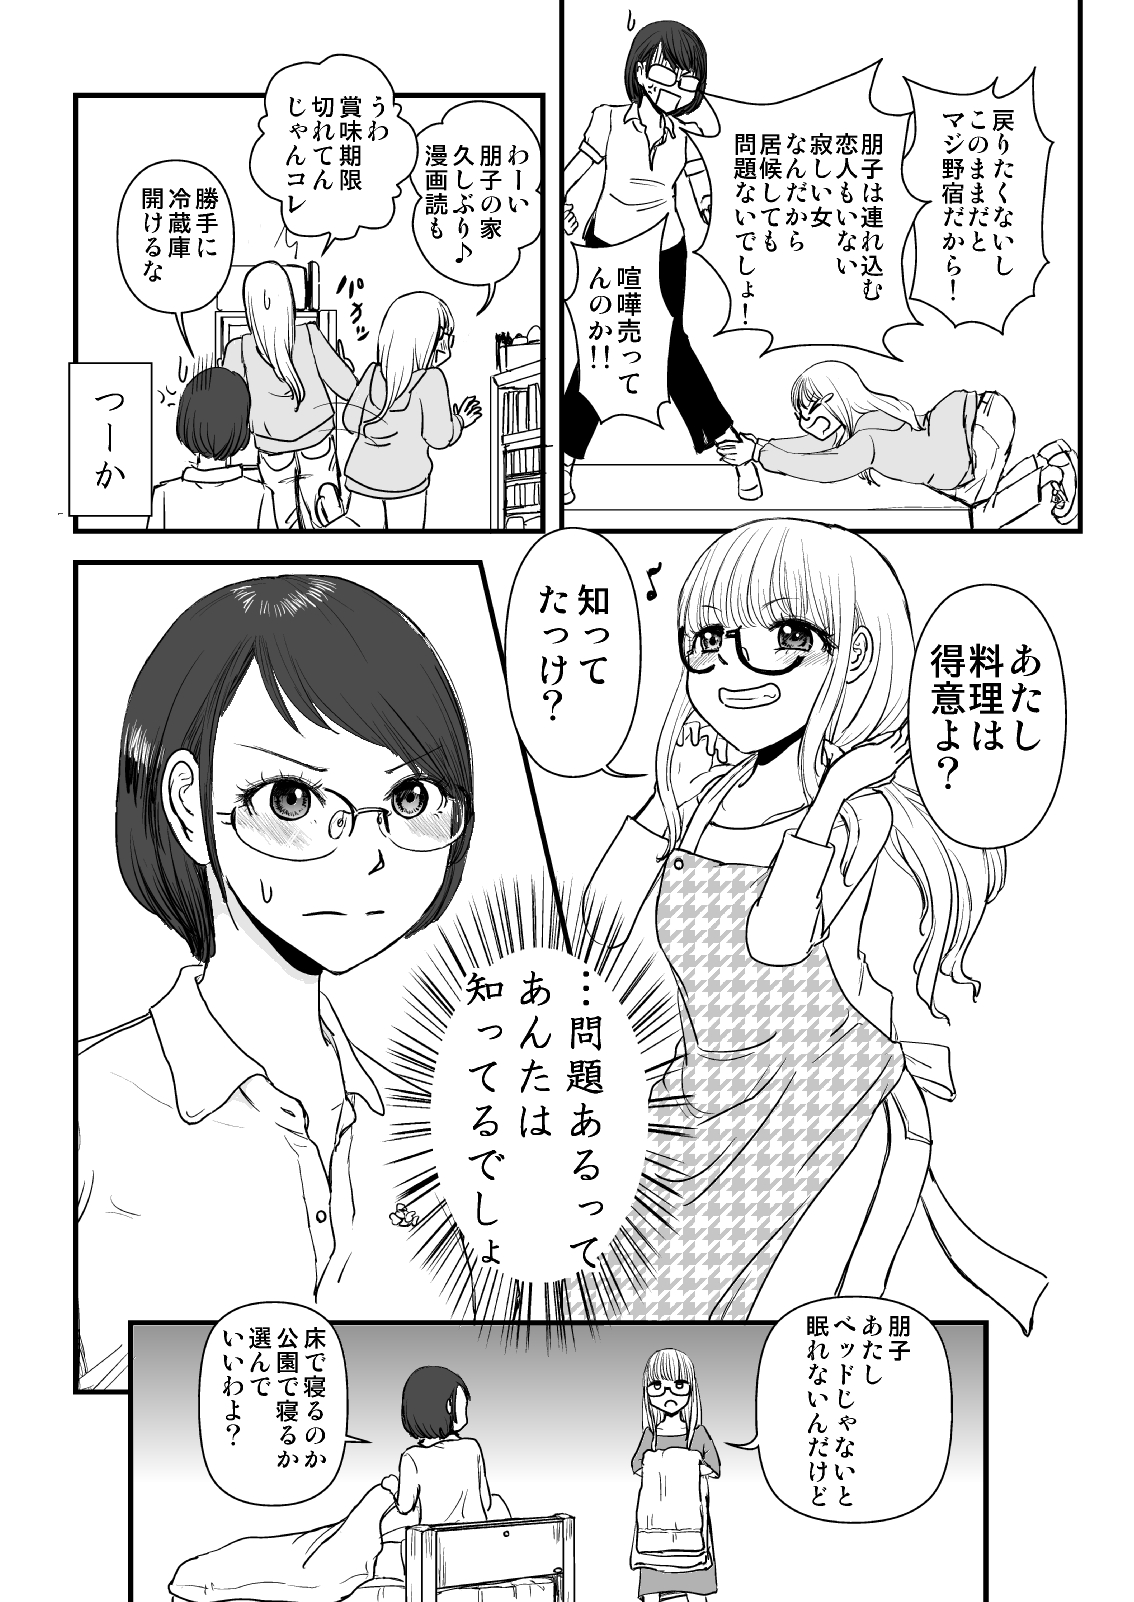 【漫画】“Curry味のUNKO”から始まるピュアな恋愛